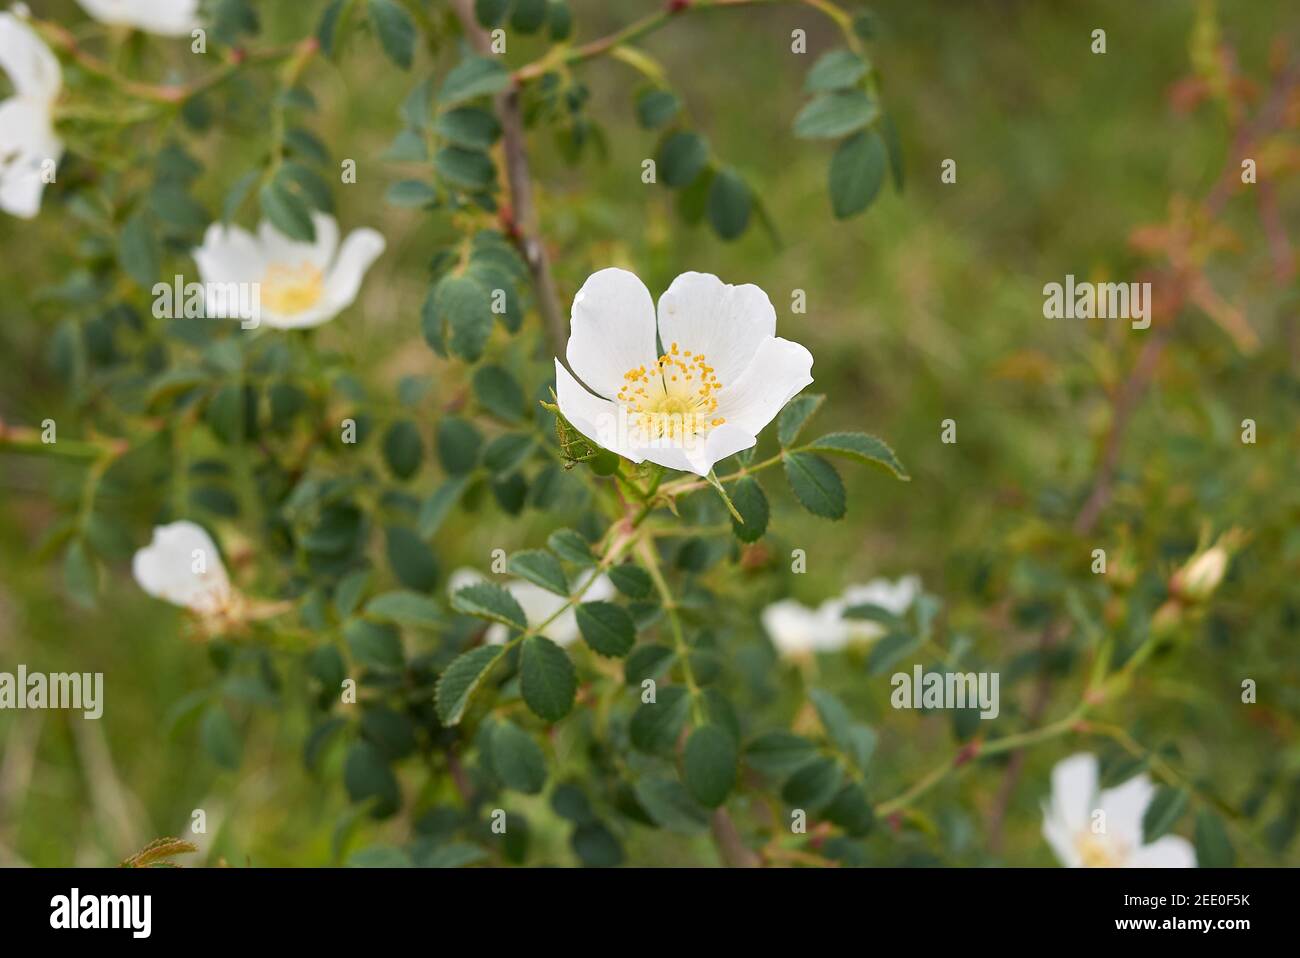 Rosa agrestis shrub with white flowers Stock Photo